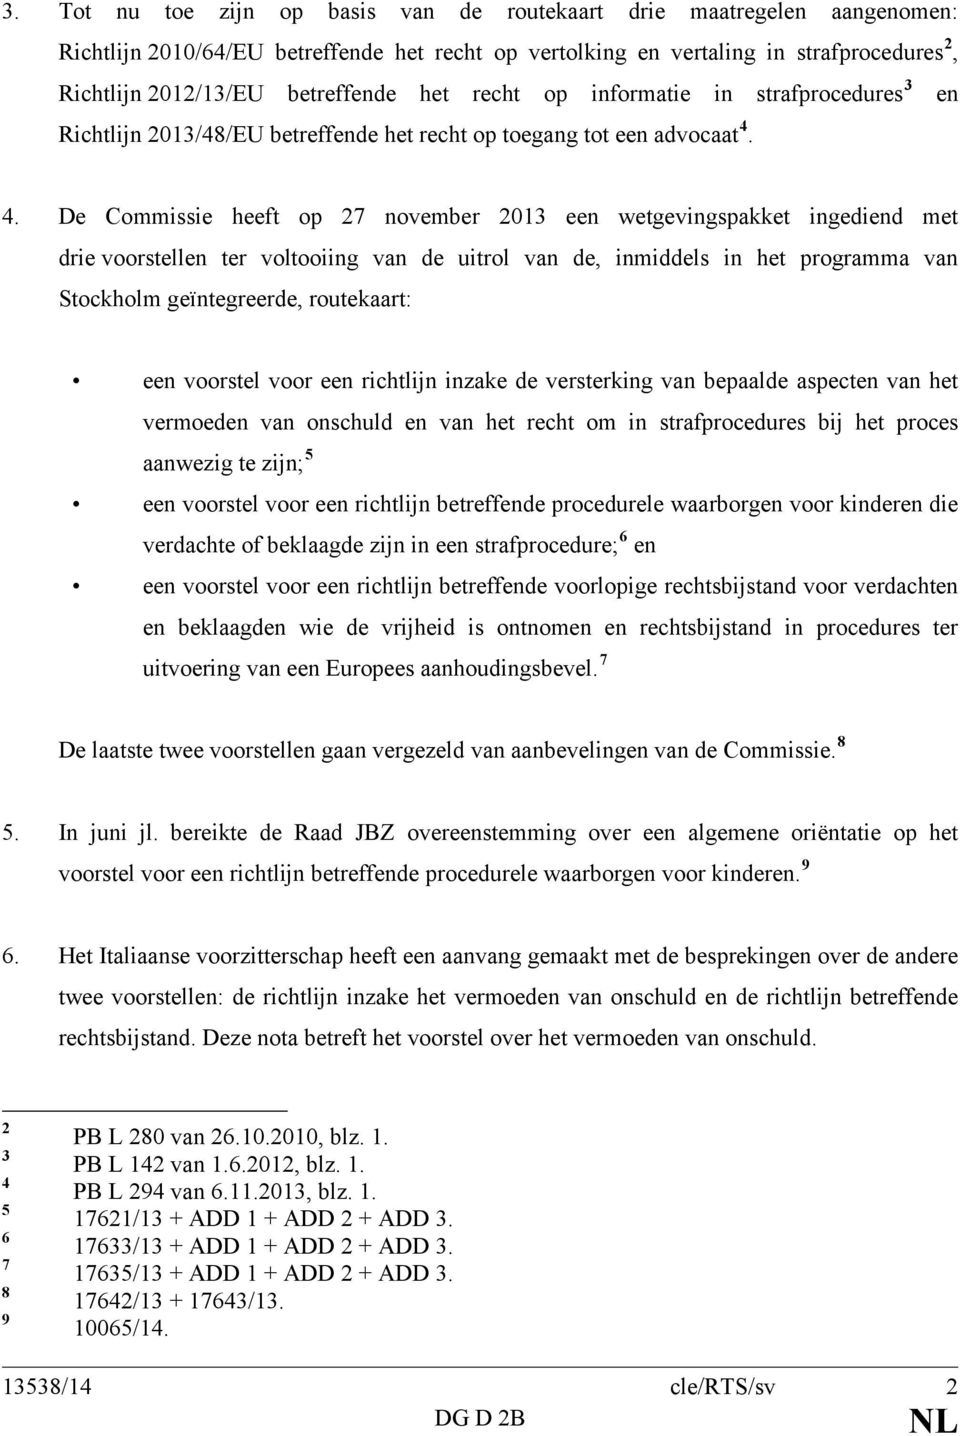 4. De Commissie heeft op 27 november 2013 een wetgevingspakket ingediend met drie voorstellen ter voltooiing van de uitrol van de, inmiddels in het programma van Stockholm geïntegreerde, routekaart: